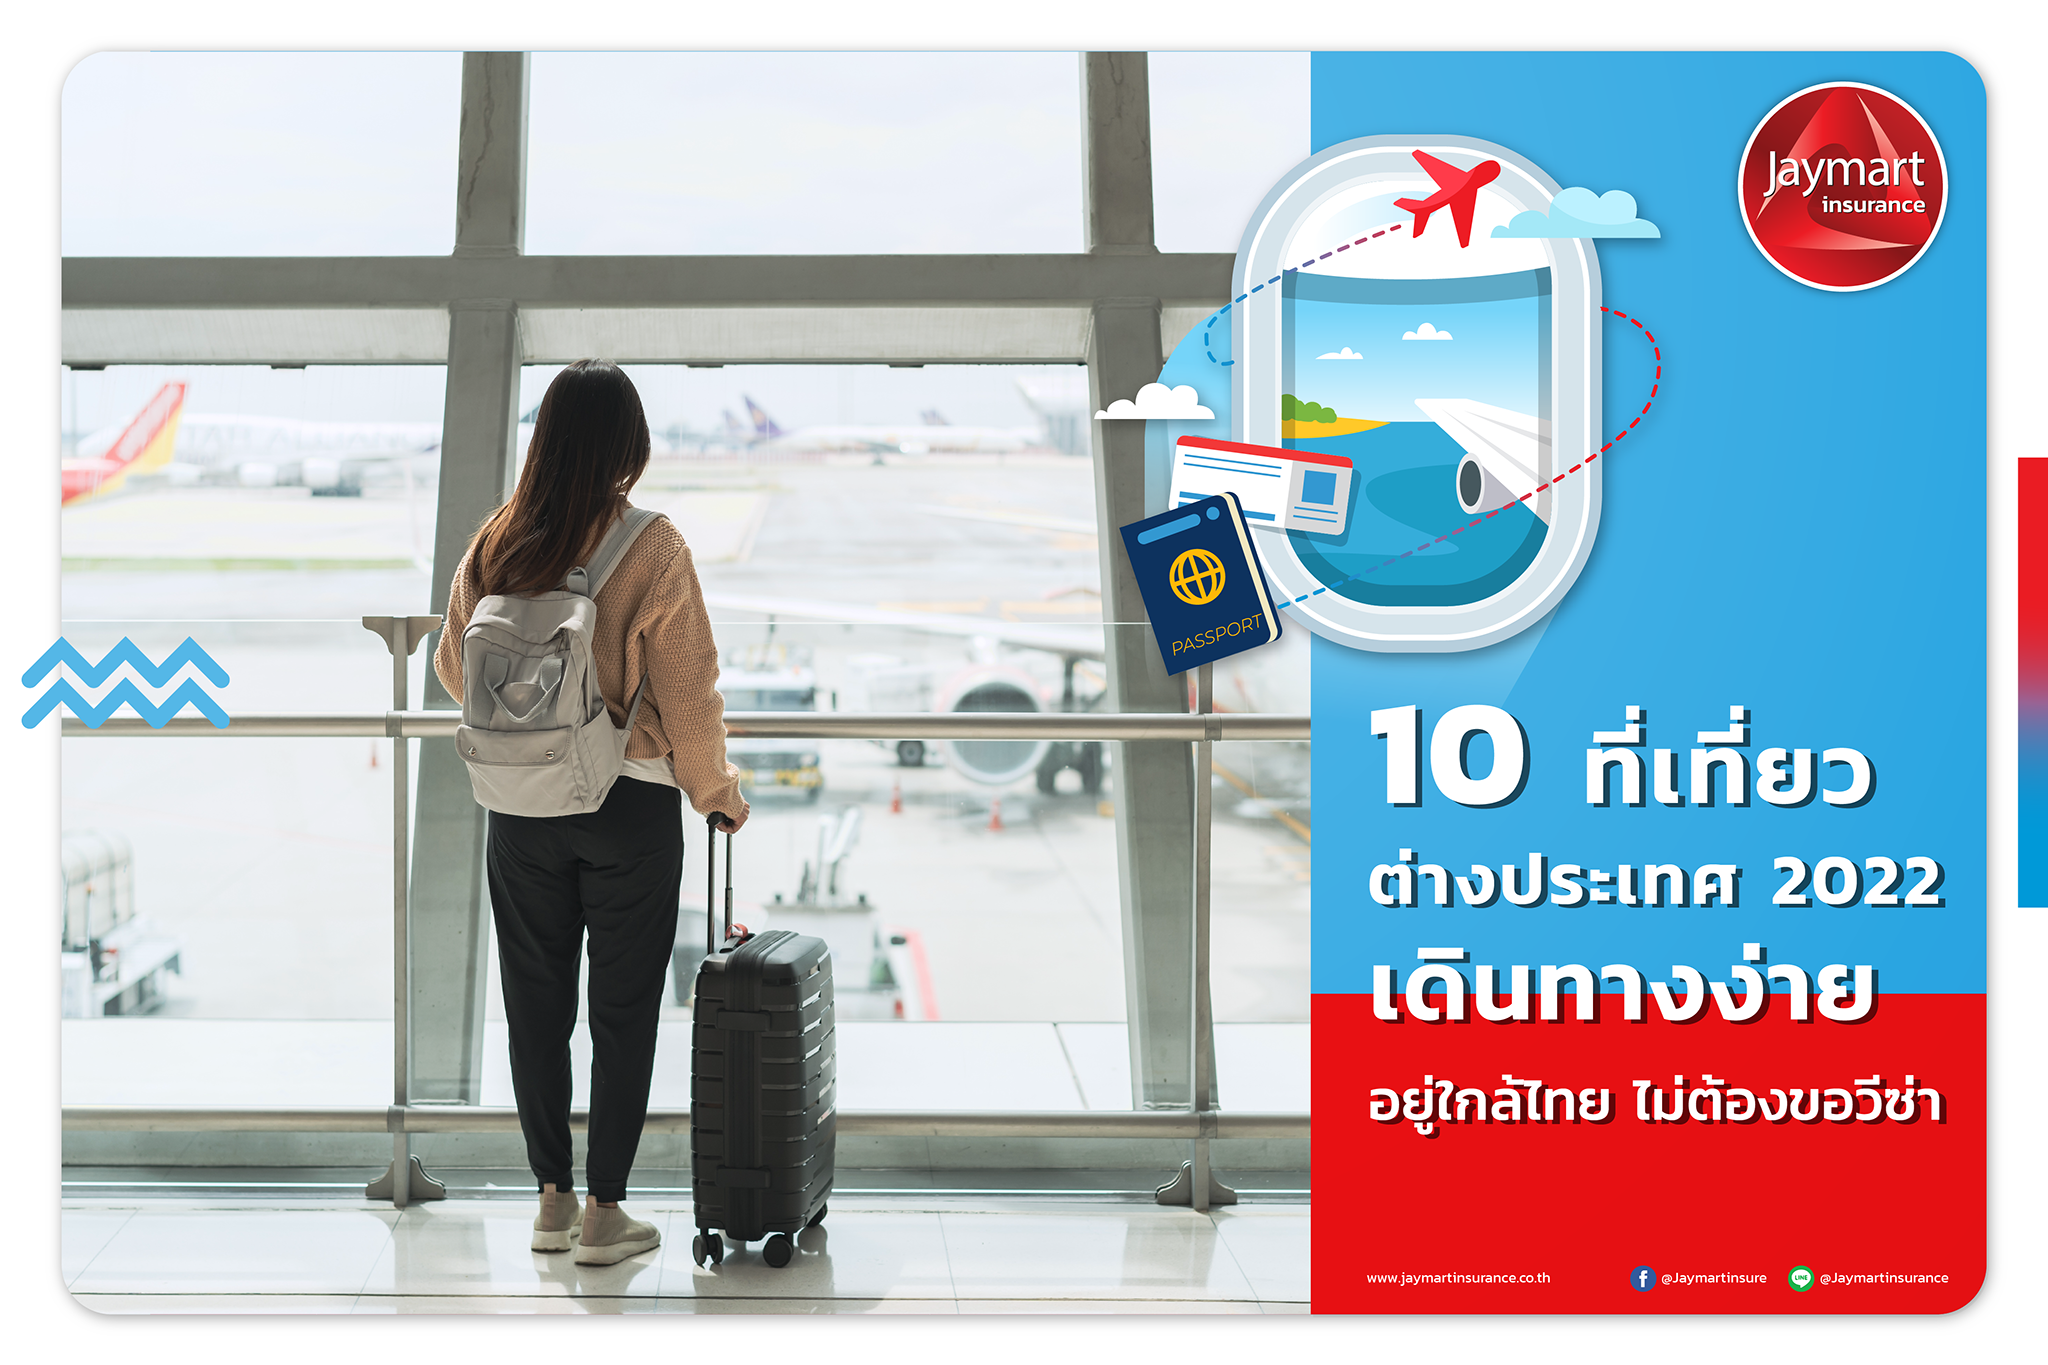 10 ที่เที่ยวต่างประเทศ 2022 เดินทางง่าย อยู่ใกล้ไทย ไม่ต้องขอวีซ่า 